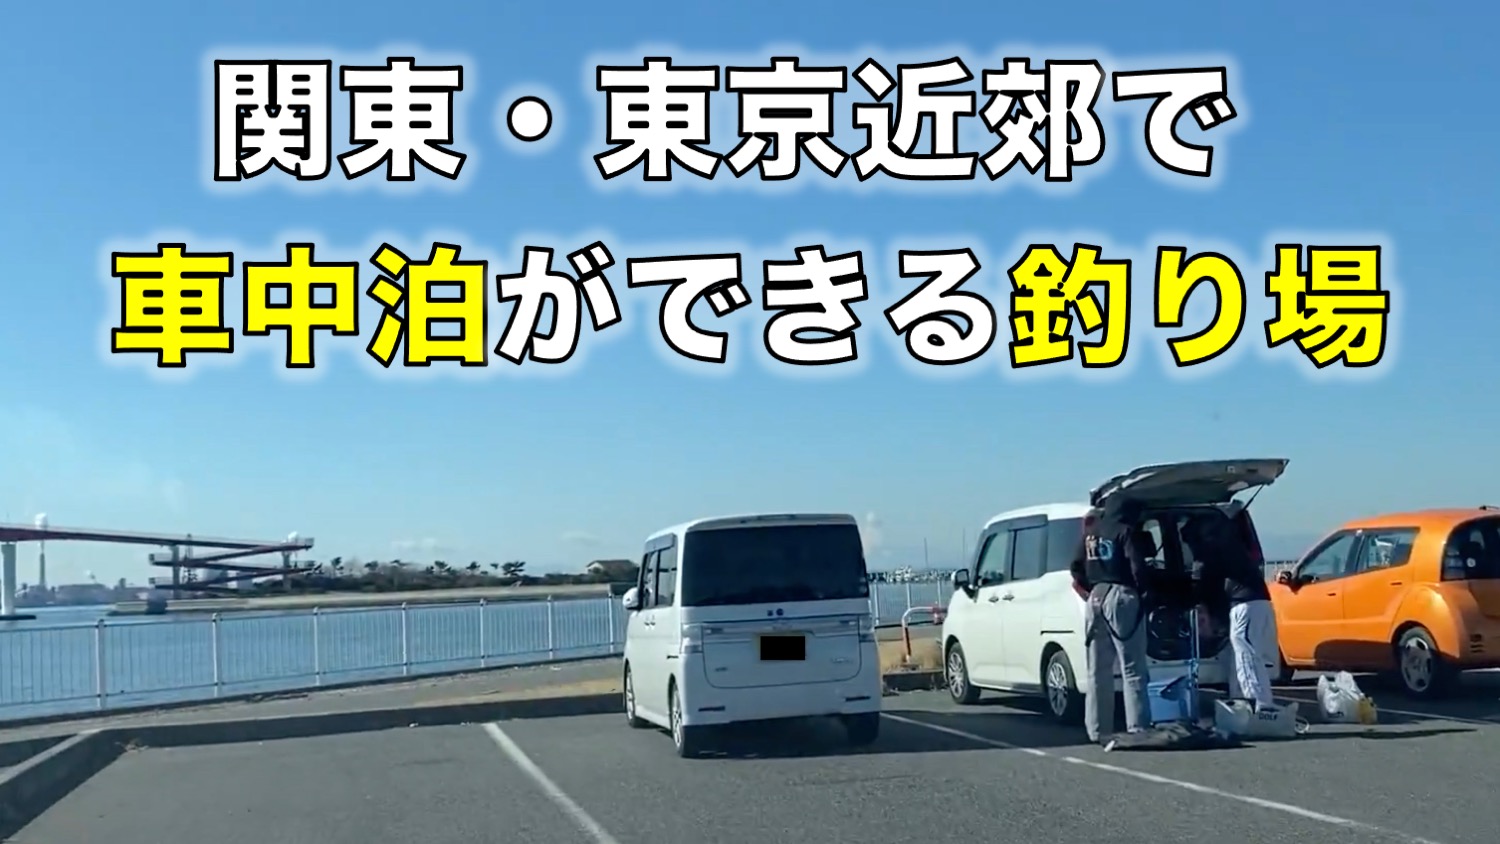 車中泊ができる釣り場 の記事一覧 東京湾奥釣り場探検隊 動画で東京 千葉 神奈川の海 川 池 沼などの釣り場を紹介